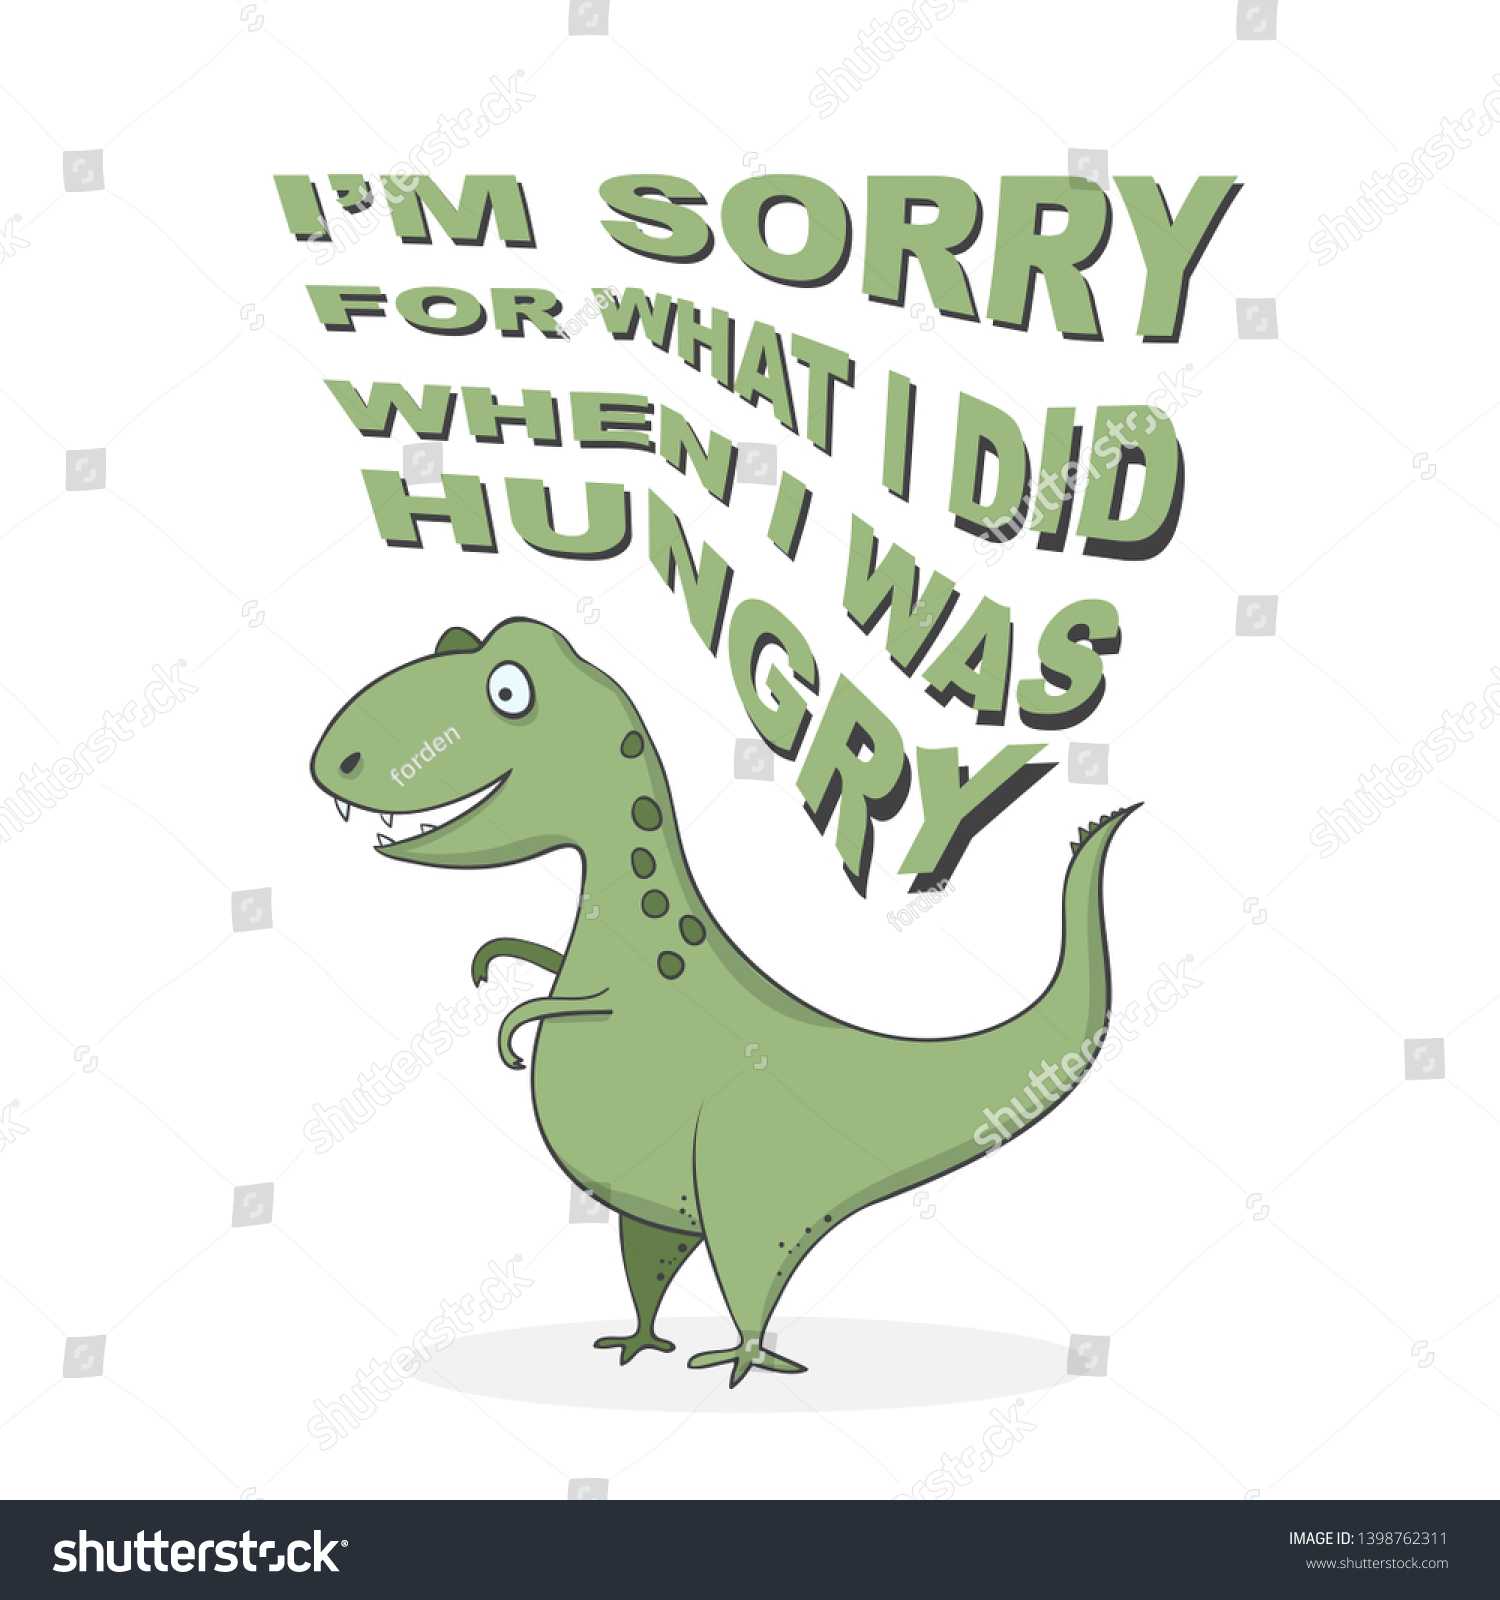 Стоковая Векторная Графика «Funny Cartoon Dinosaur Trex Inside Sorry Card Template